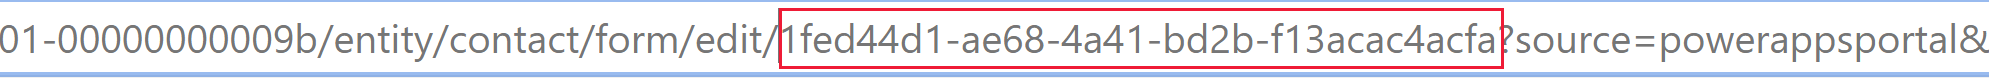 양식 ID는 최신 양식 디자이너의 양식을 열 때 브라우저 URL에서 찾을 수 있습니다.